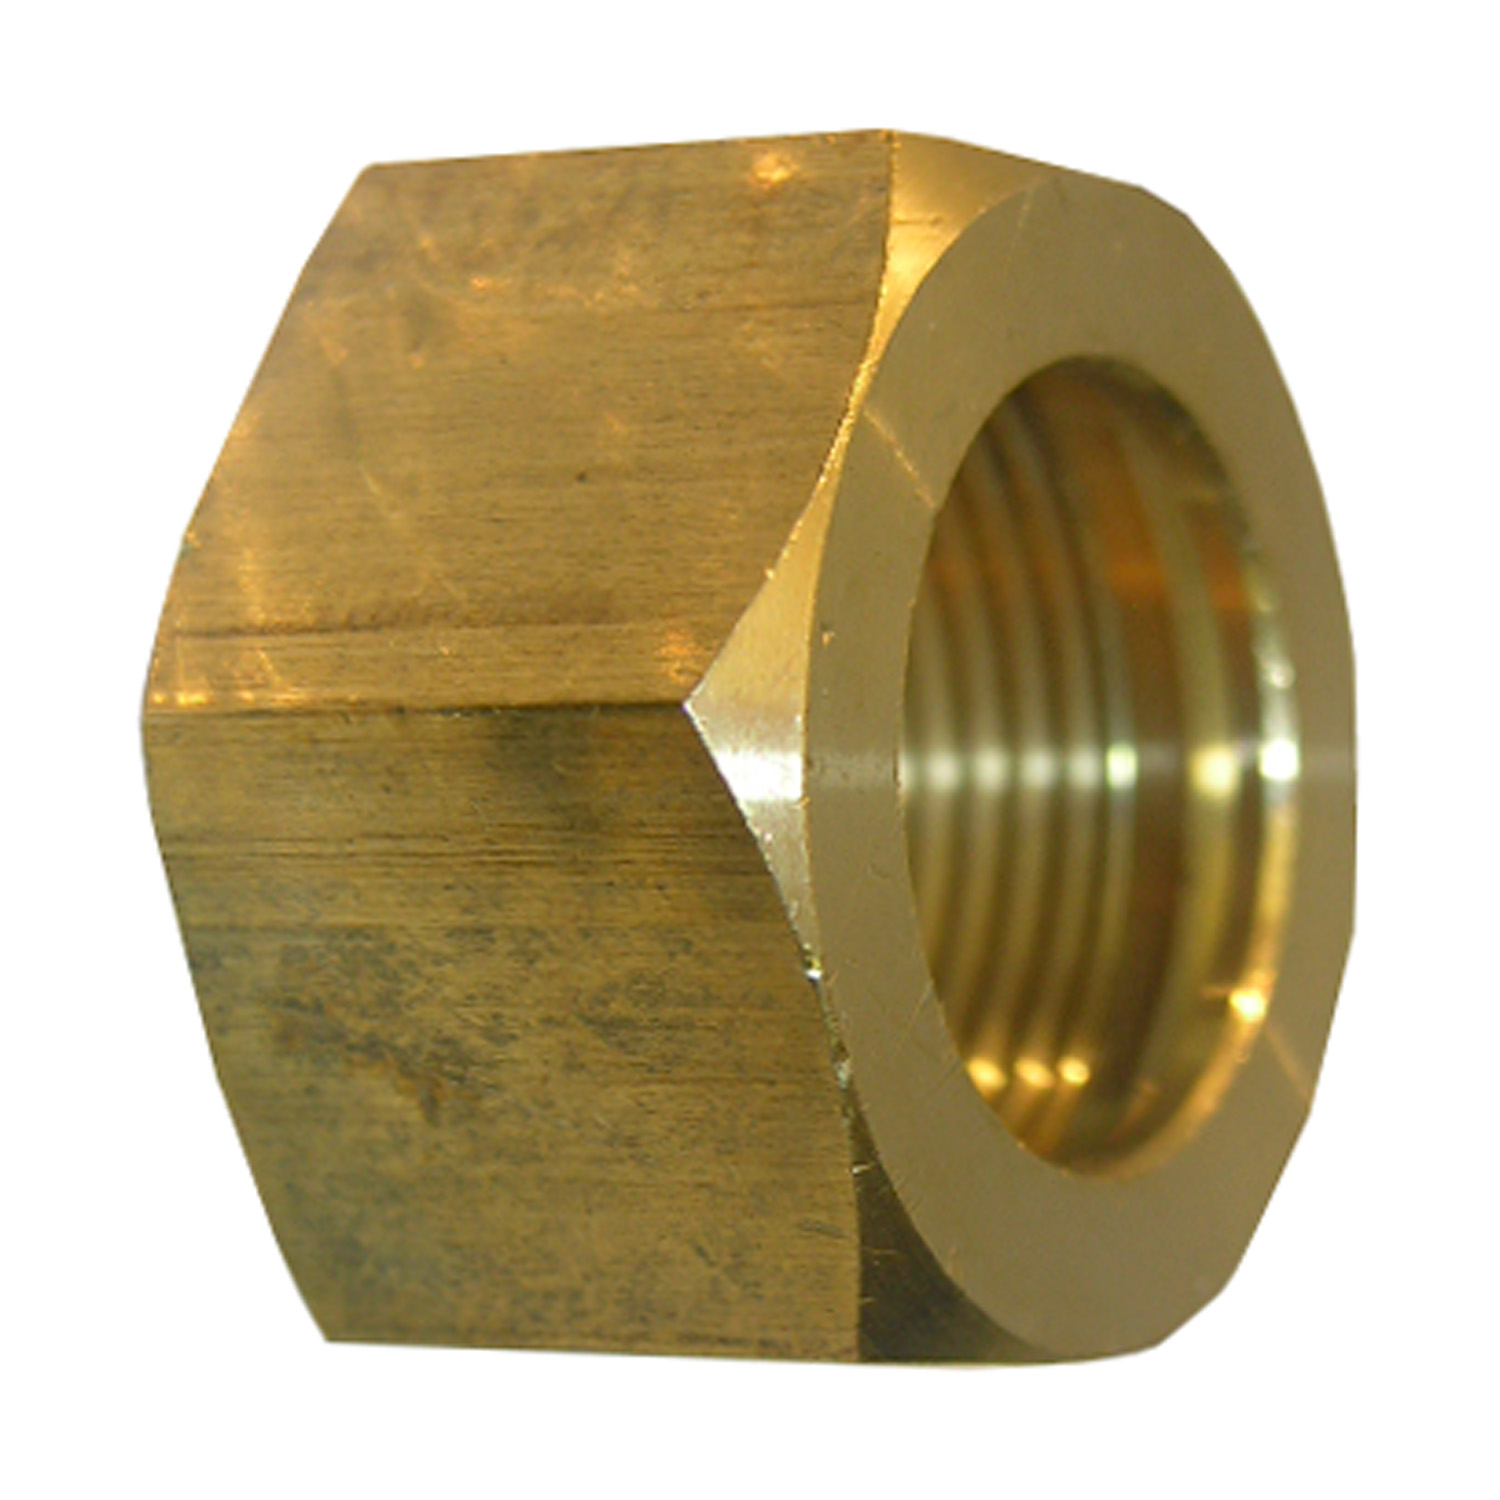 Lasco 17-6121 Nut, 5/16 in, Compression, Brass